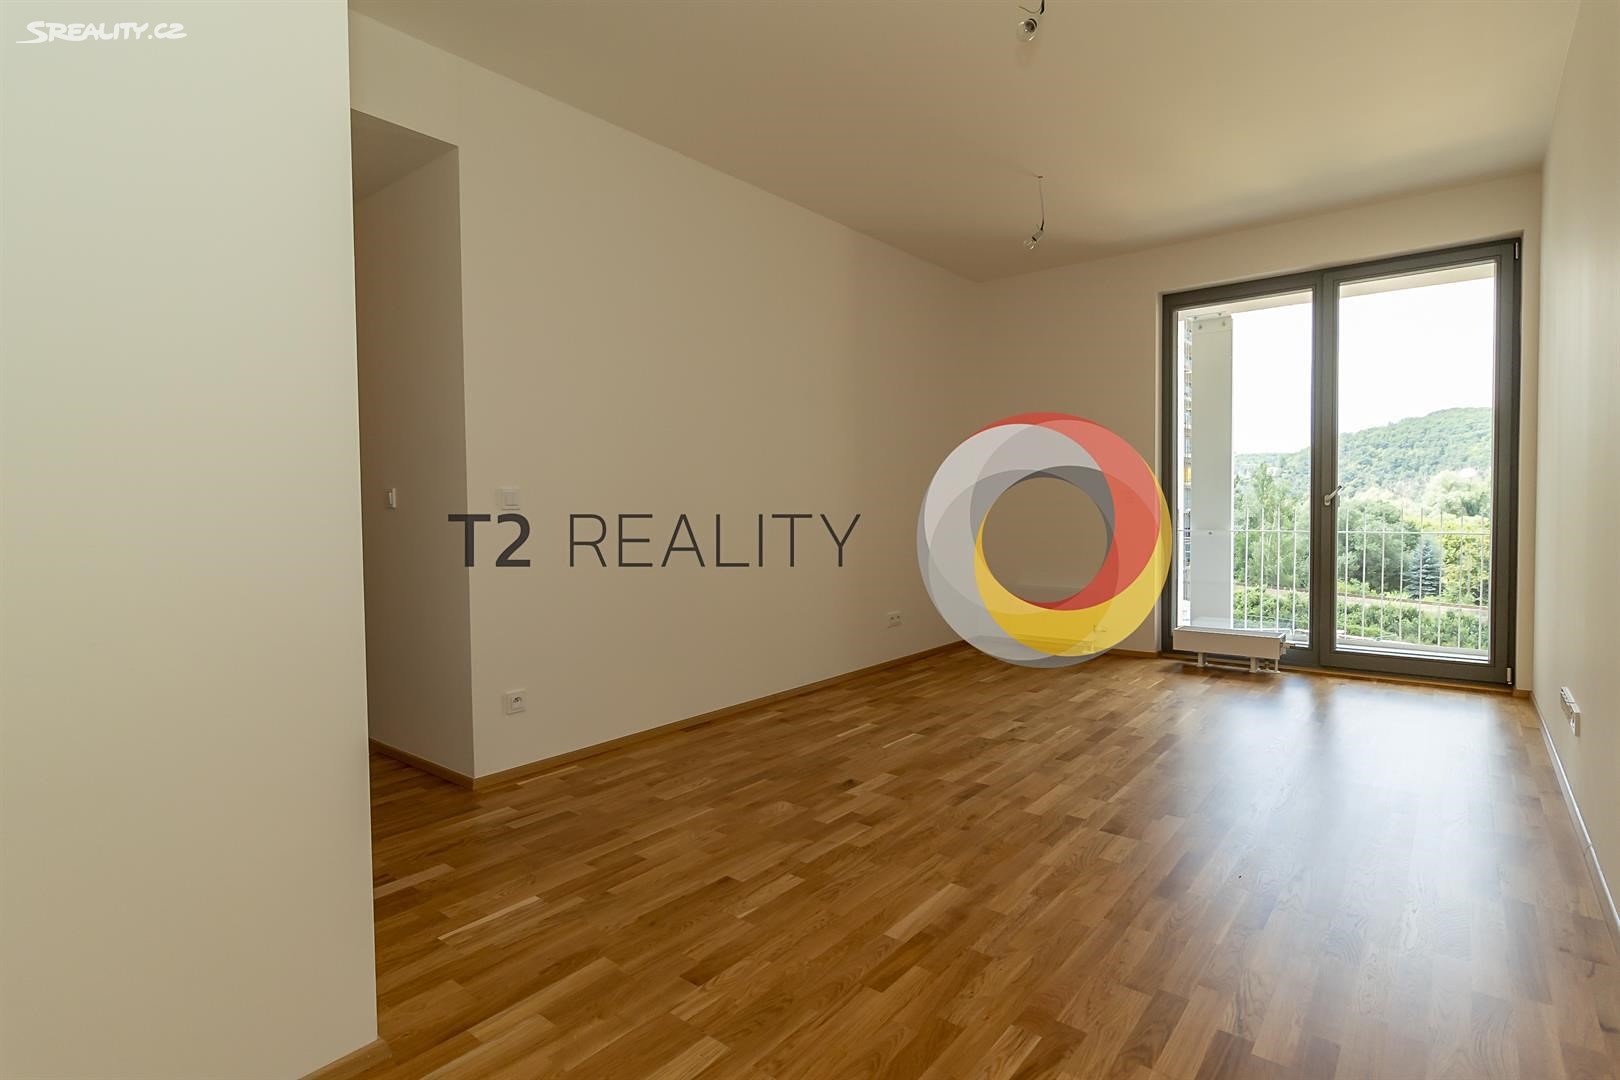 Prodej bytu 2+kk 67 m², Praha 4 - Modřany